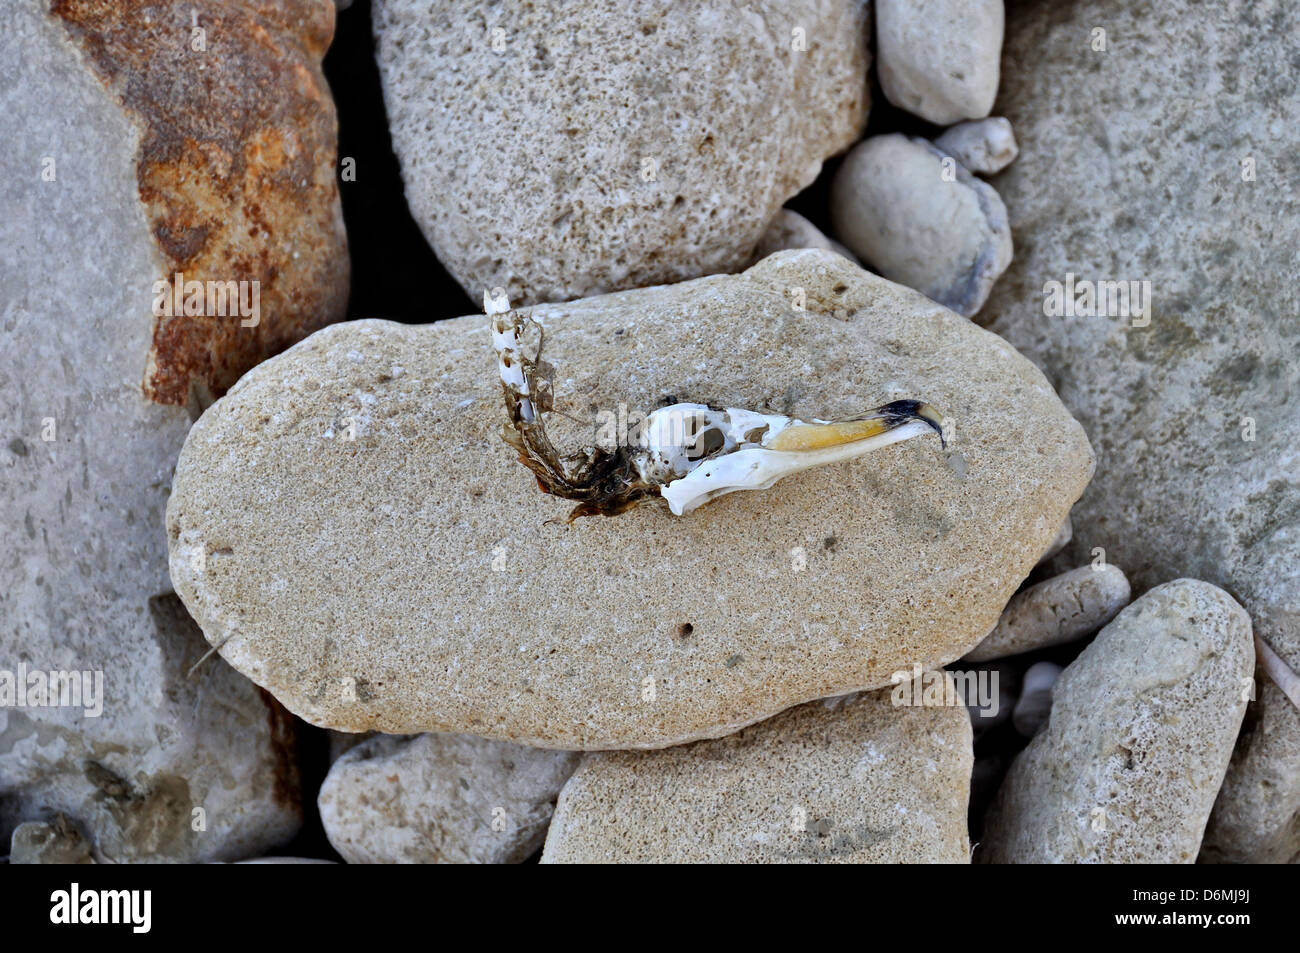 Crâne avec oiseaux bec crochu échoués sur la plage en pierre. Banque D'Images